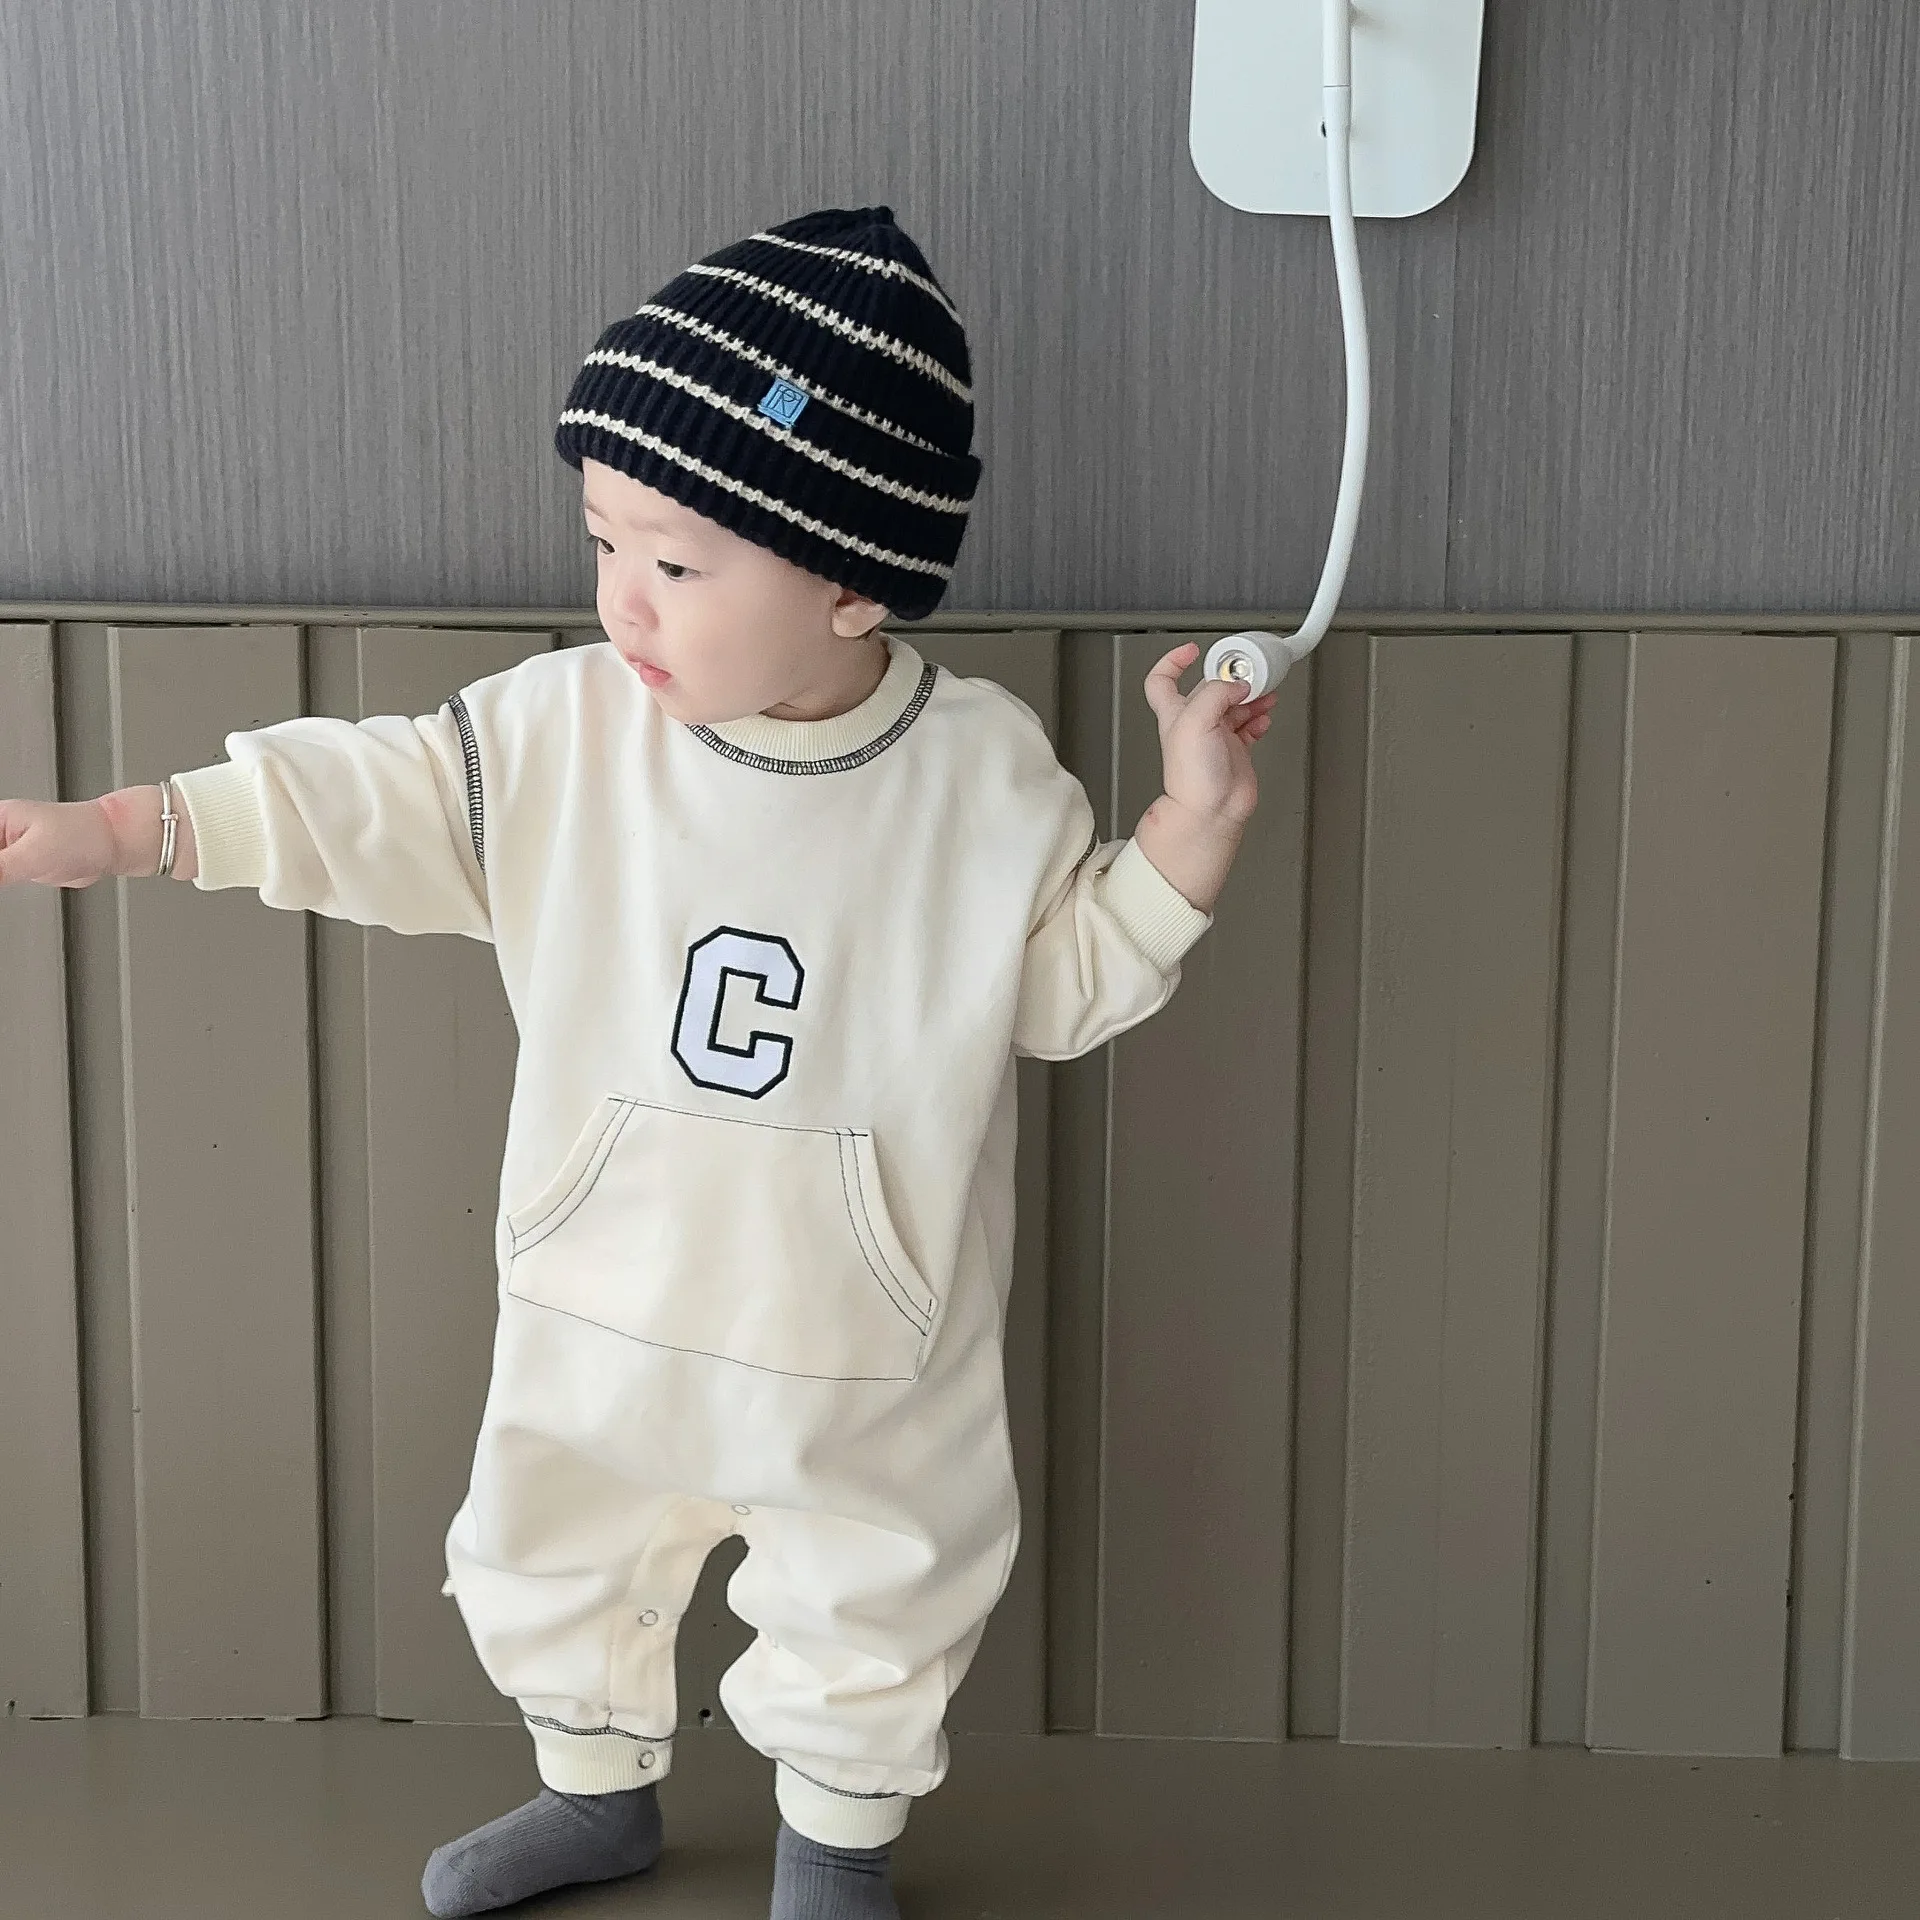 

Детский хлопковый комбинезон с длинным рукавом, на возраст 0-24 месяца